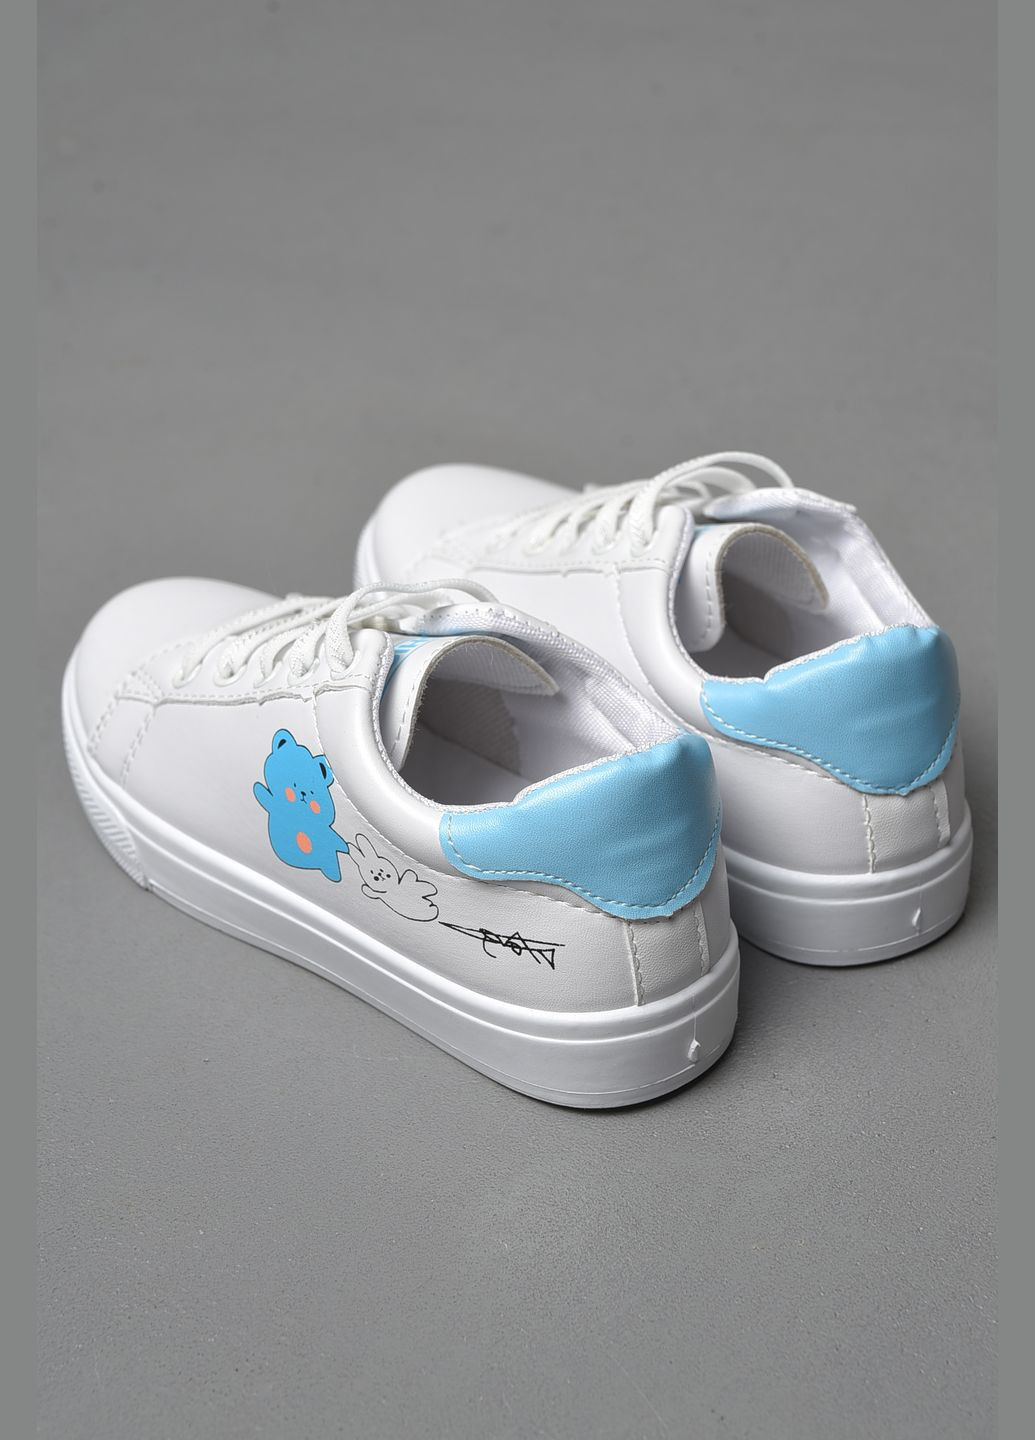 Белые демисезонные кроссовки детские белого цвета на шнуровке Let's Shop